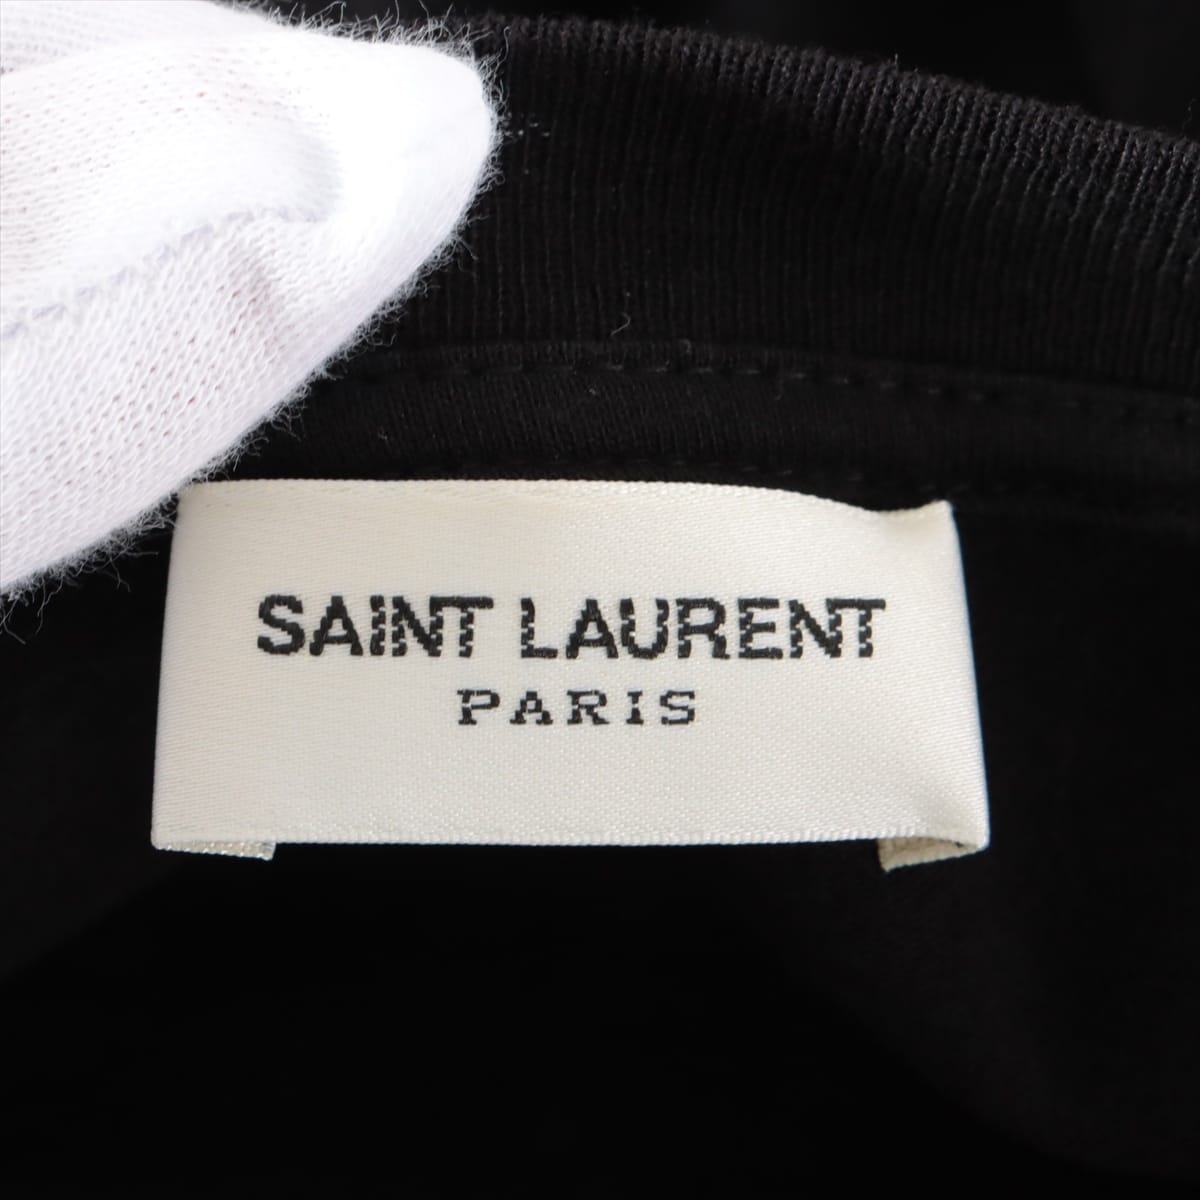 Saint Laurent Paris 17 years Cotton T-shirt S Men's Black